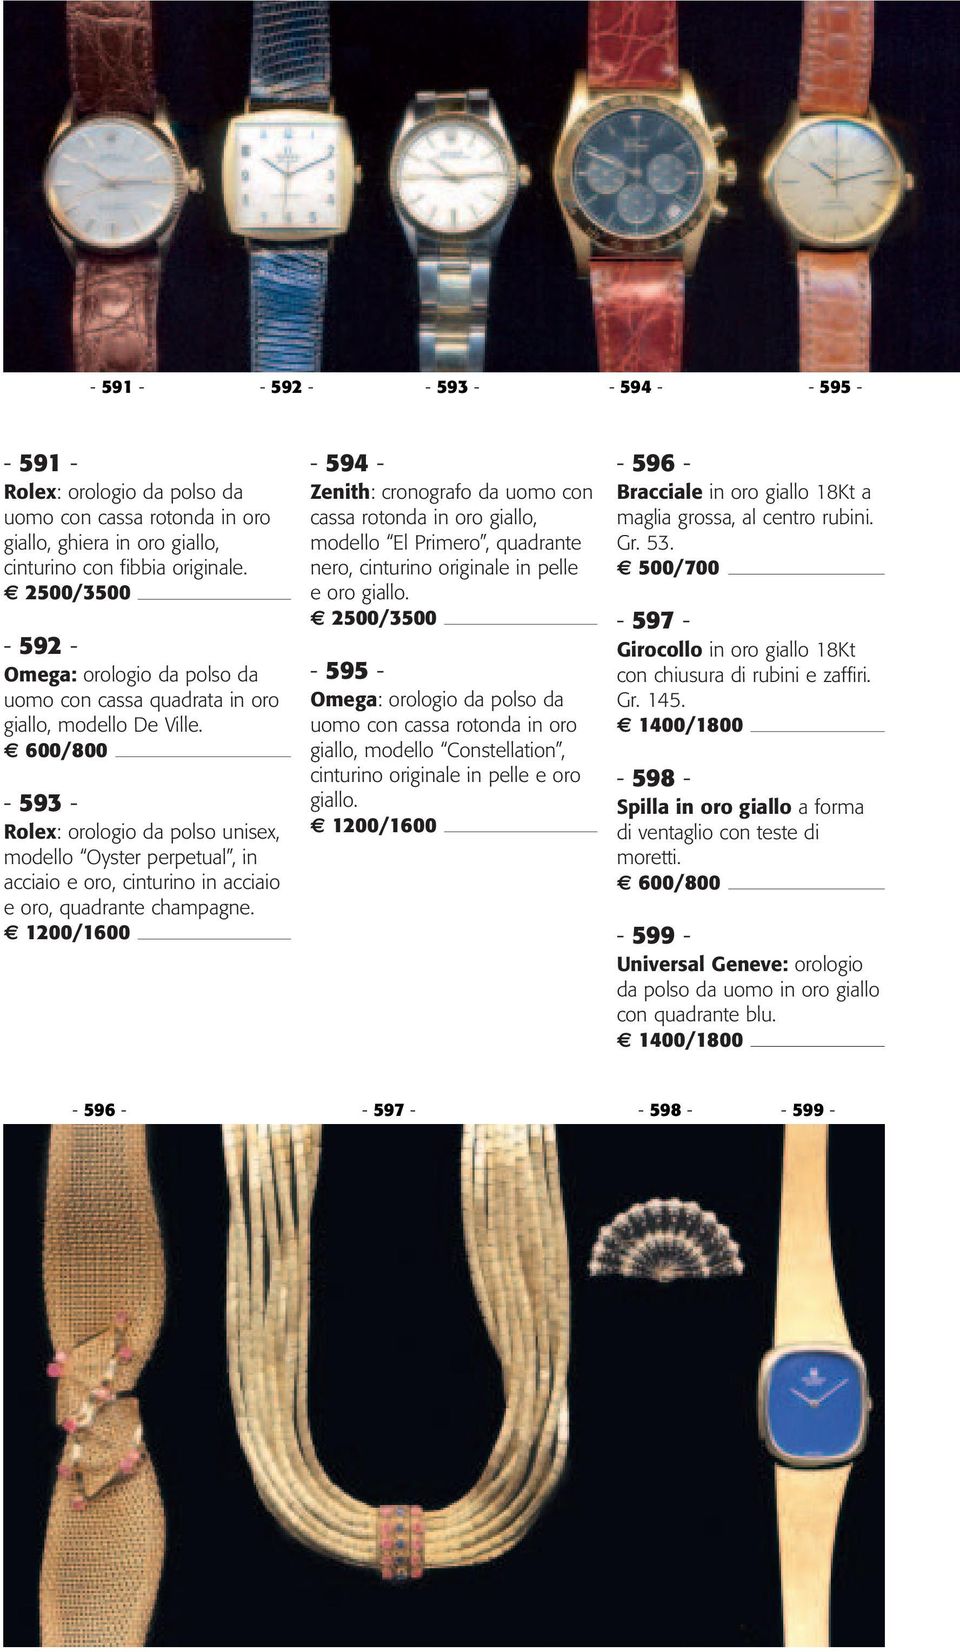 600/800-593 - Rolex: orologio da polso unisex, modello Oyster perpetual, in acciaio e oro, cinturino in acciaio e oro, quadrante champagne.